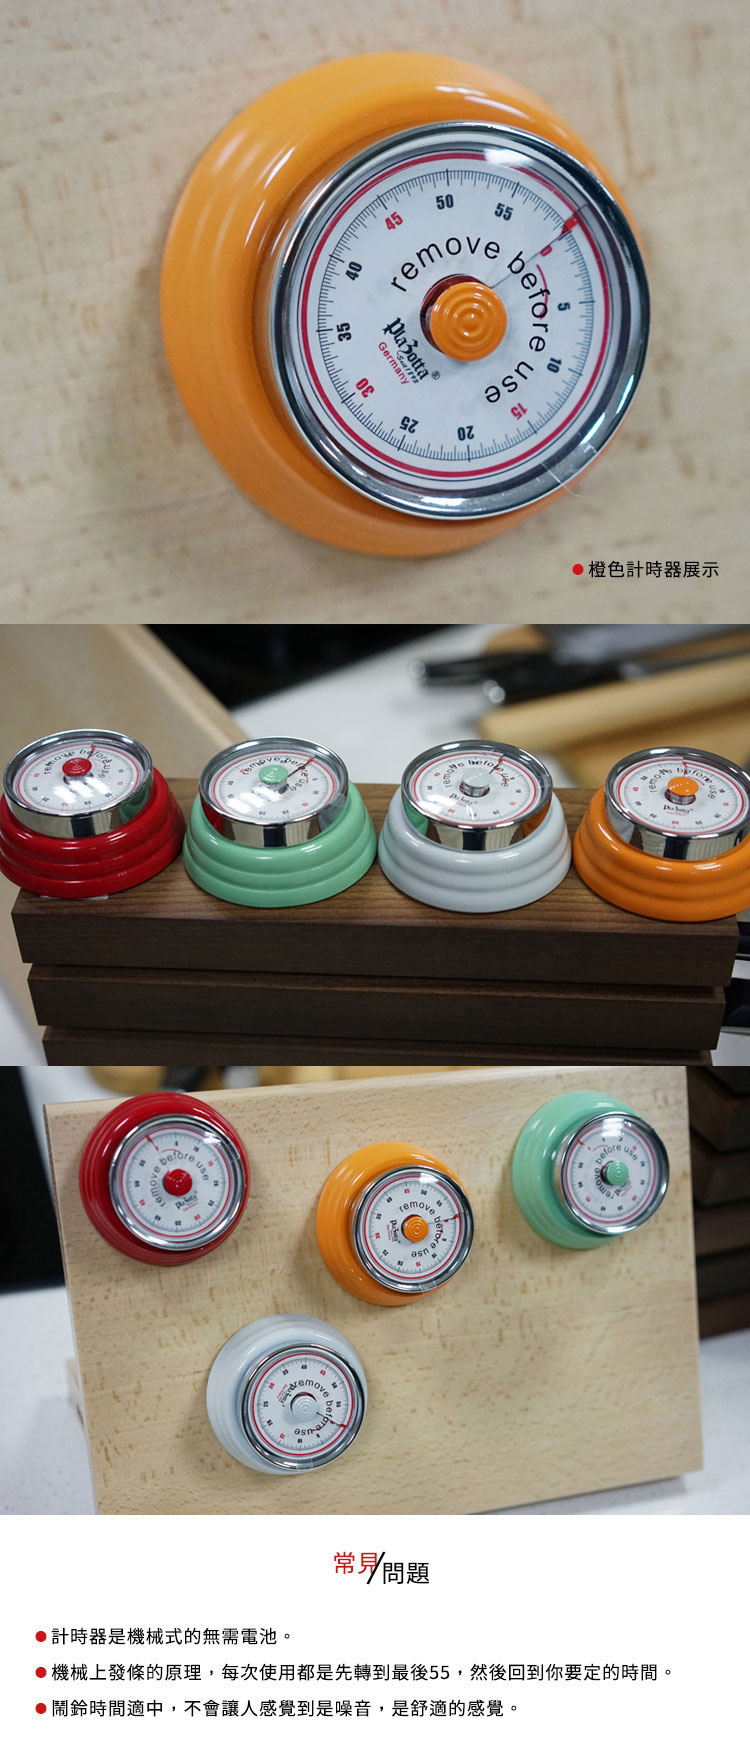 德國 Plazotta 廚房機械計時器(4色)